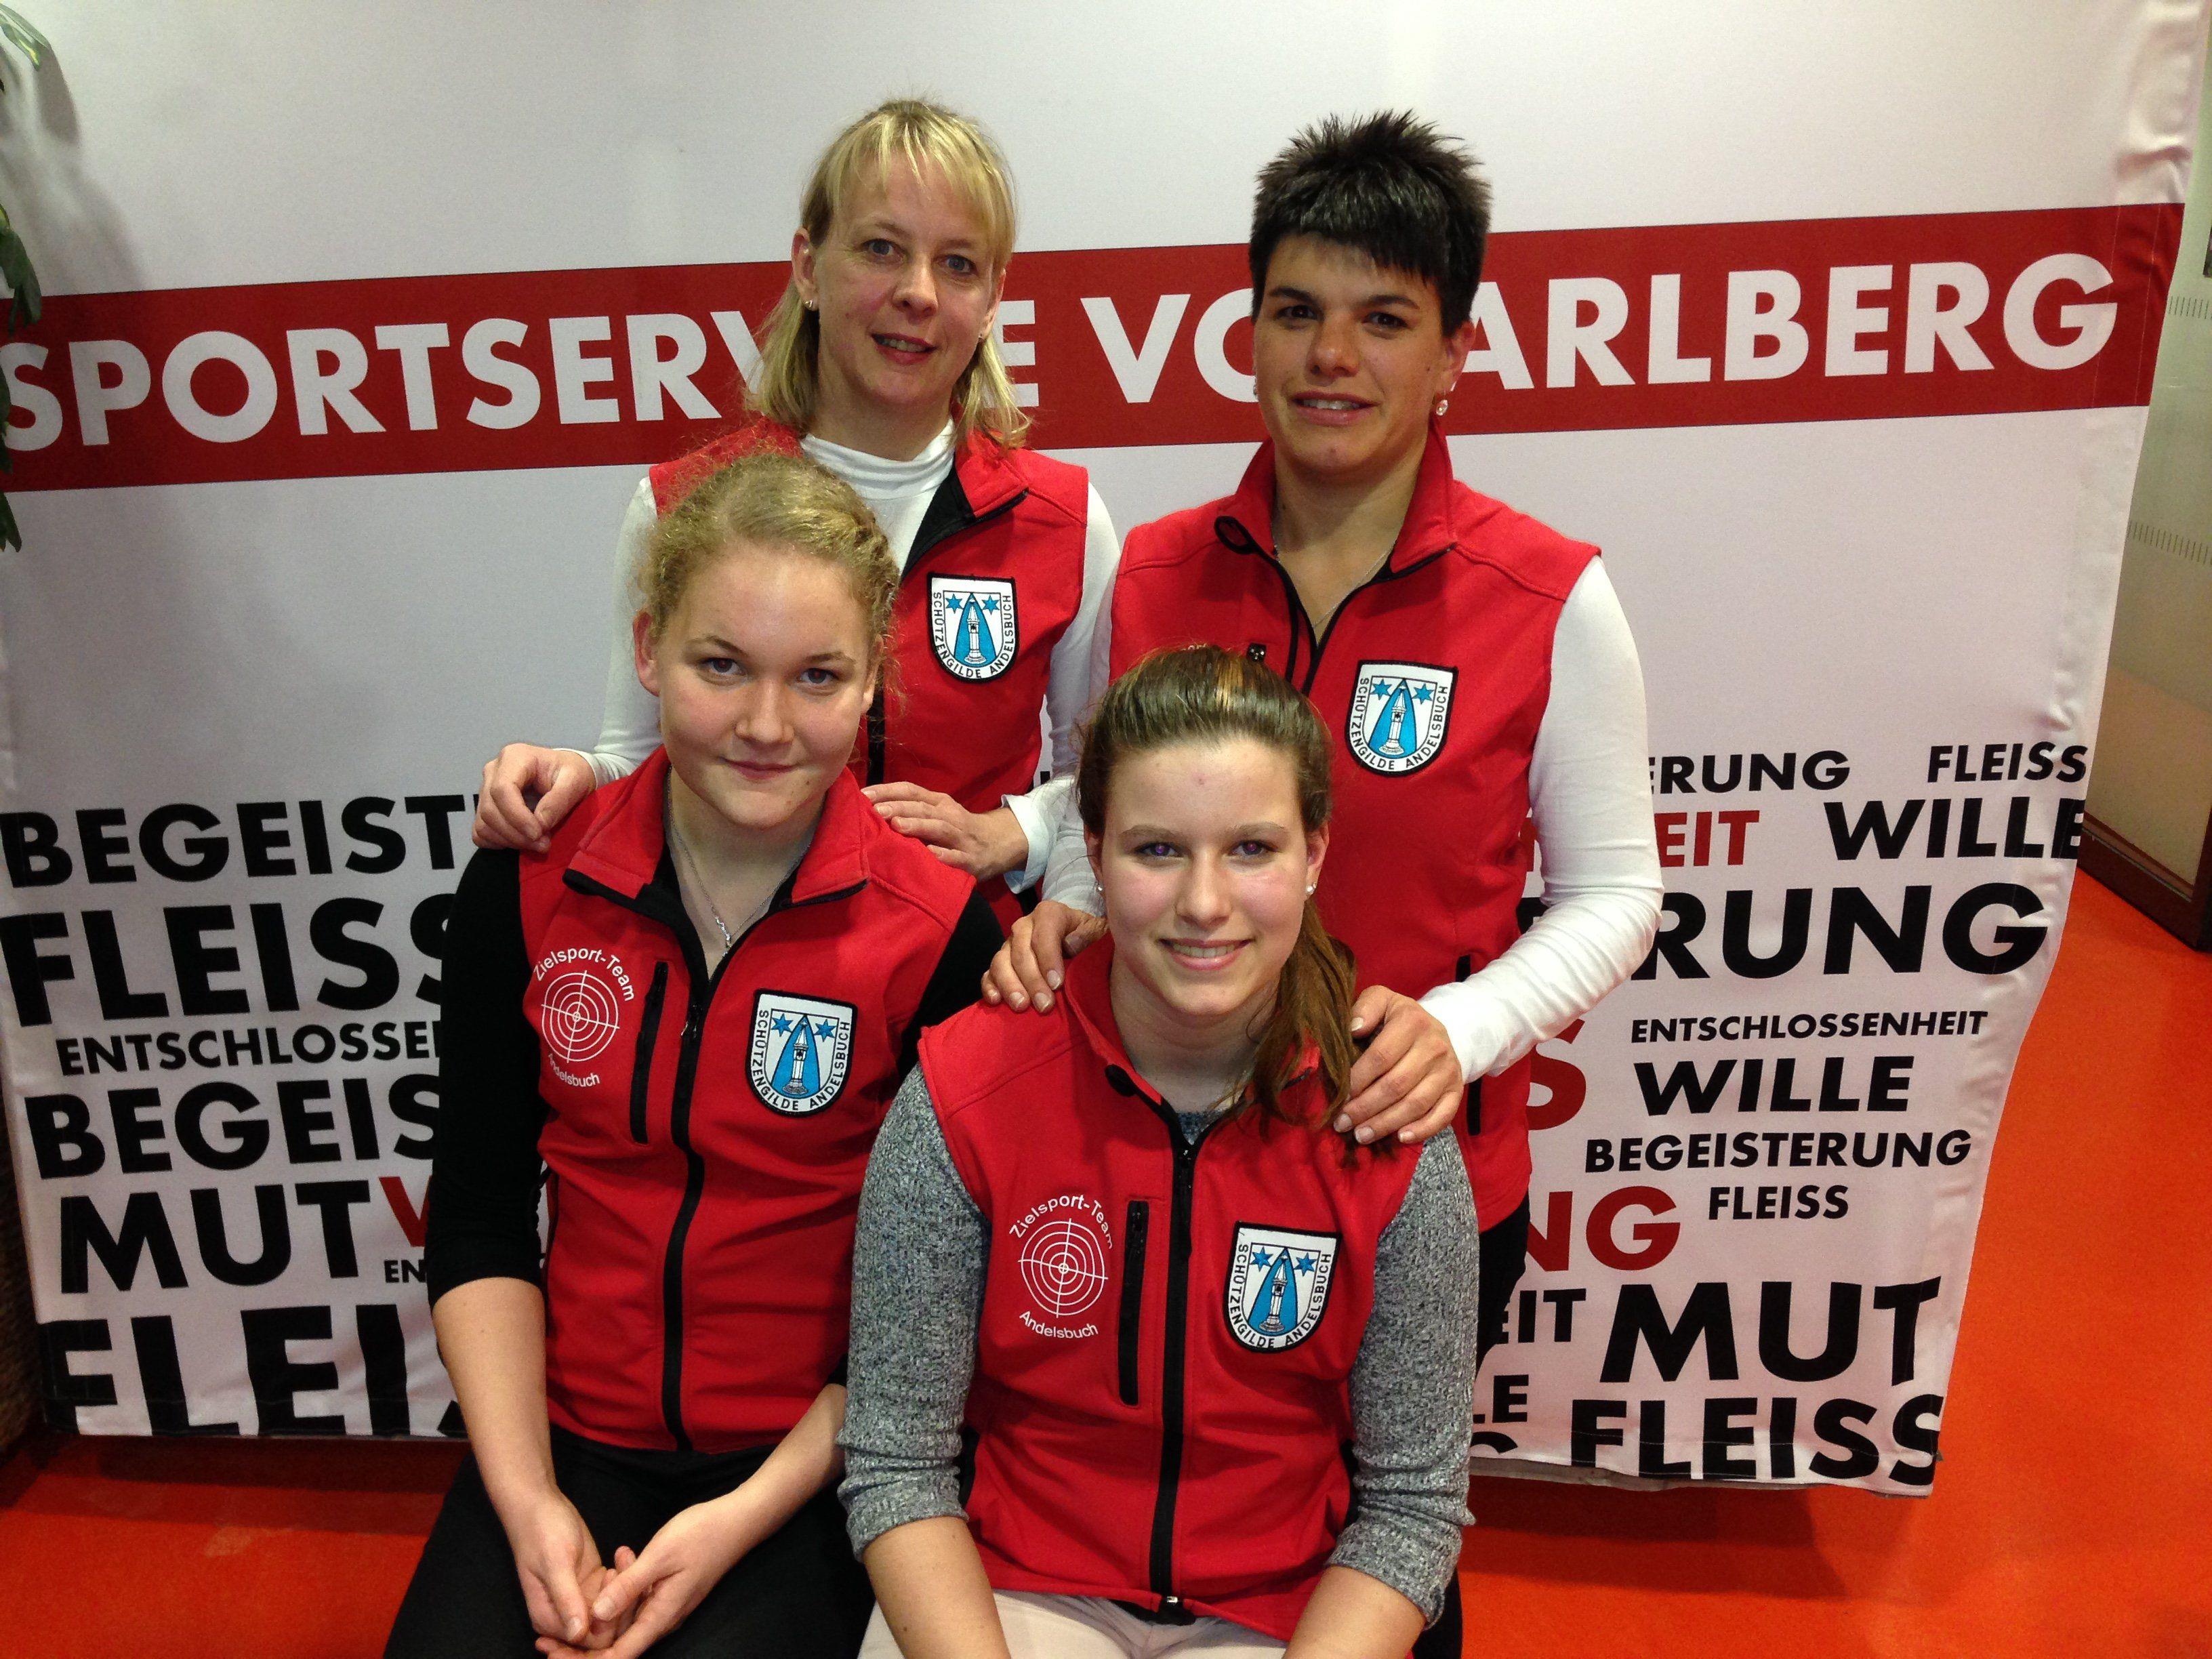 Bild vorne Bianca Egender links, Julia Oberholzer rechts; hinten links Waltraud Metzler, rechts Katja Rüscher